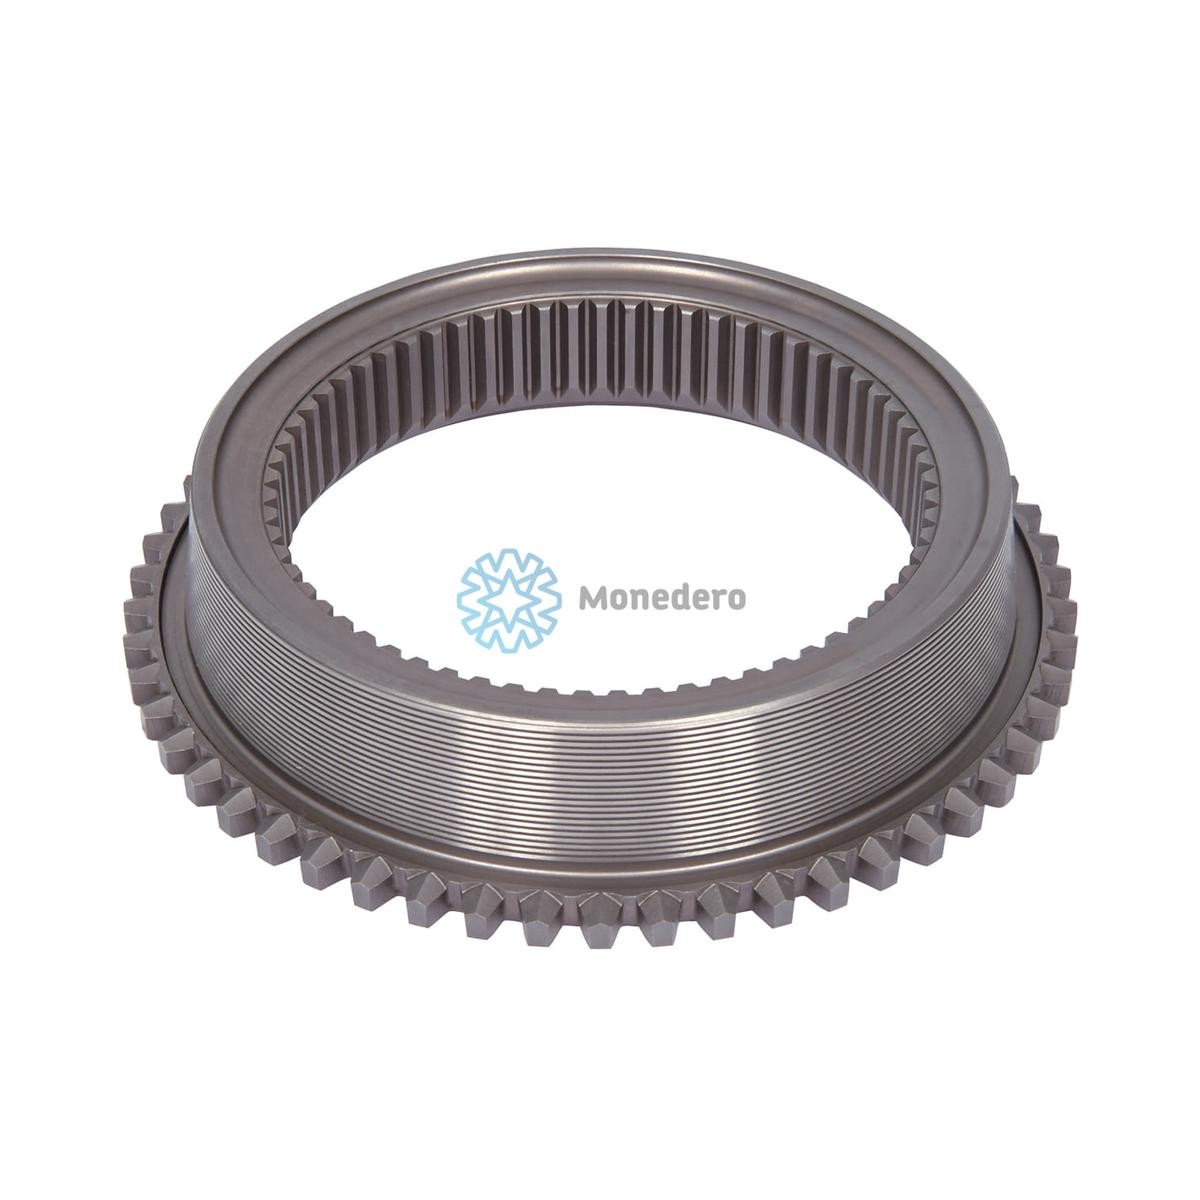 MONEDERO Synchronizer Cone, speed change gear 50021100008 buy